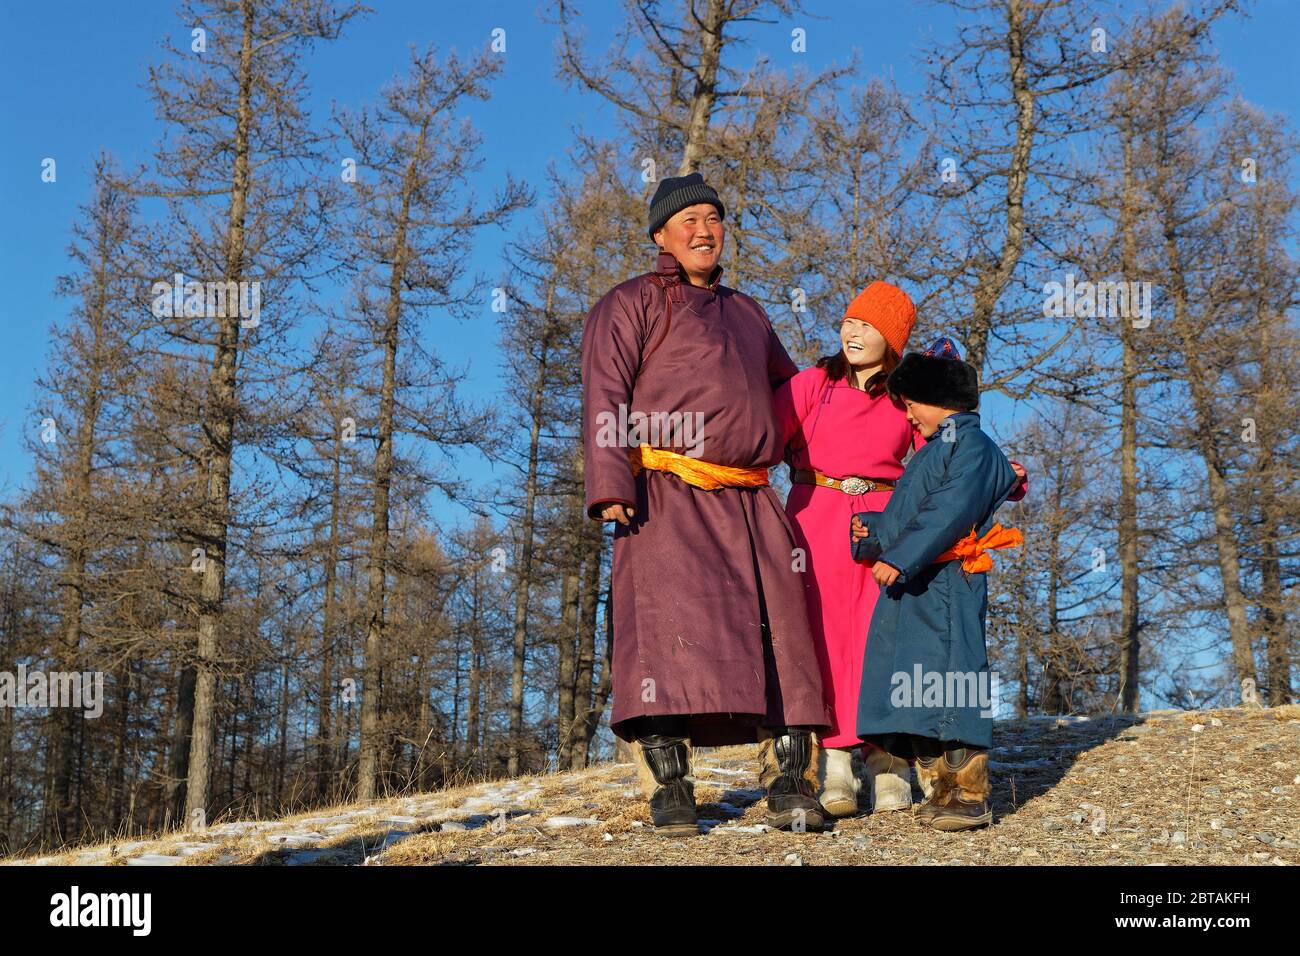 KHATGAL, MONGOLIA, 2 marzo 2020 : la gente mongolo, vestita con abiti tradizionali, posa in un paesaggio di foresta. Foto Stock